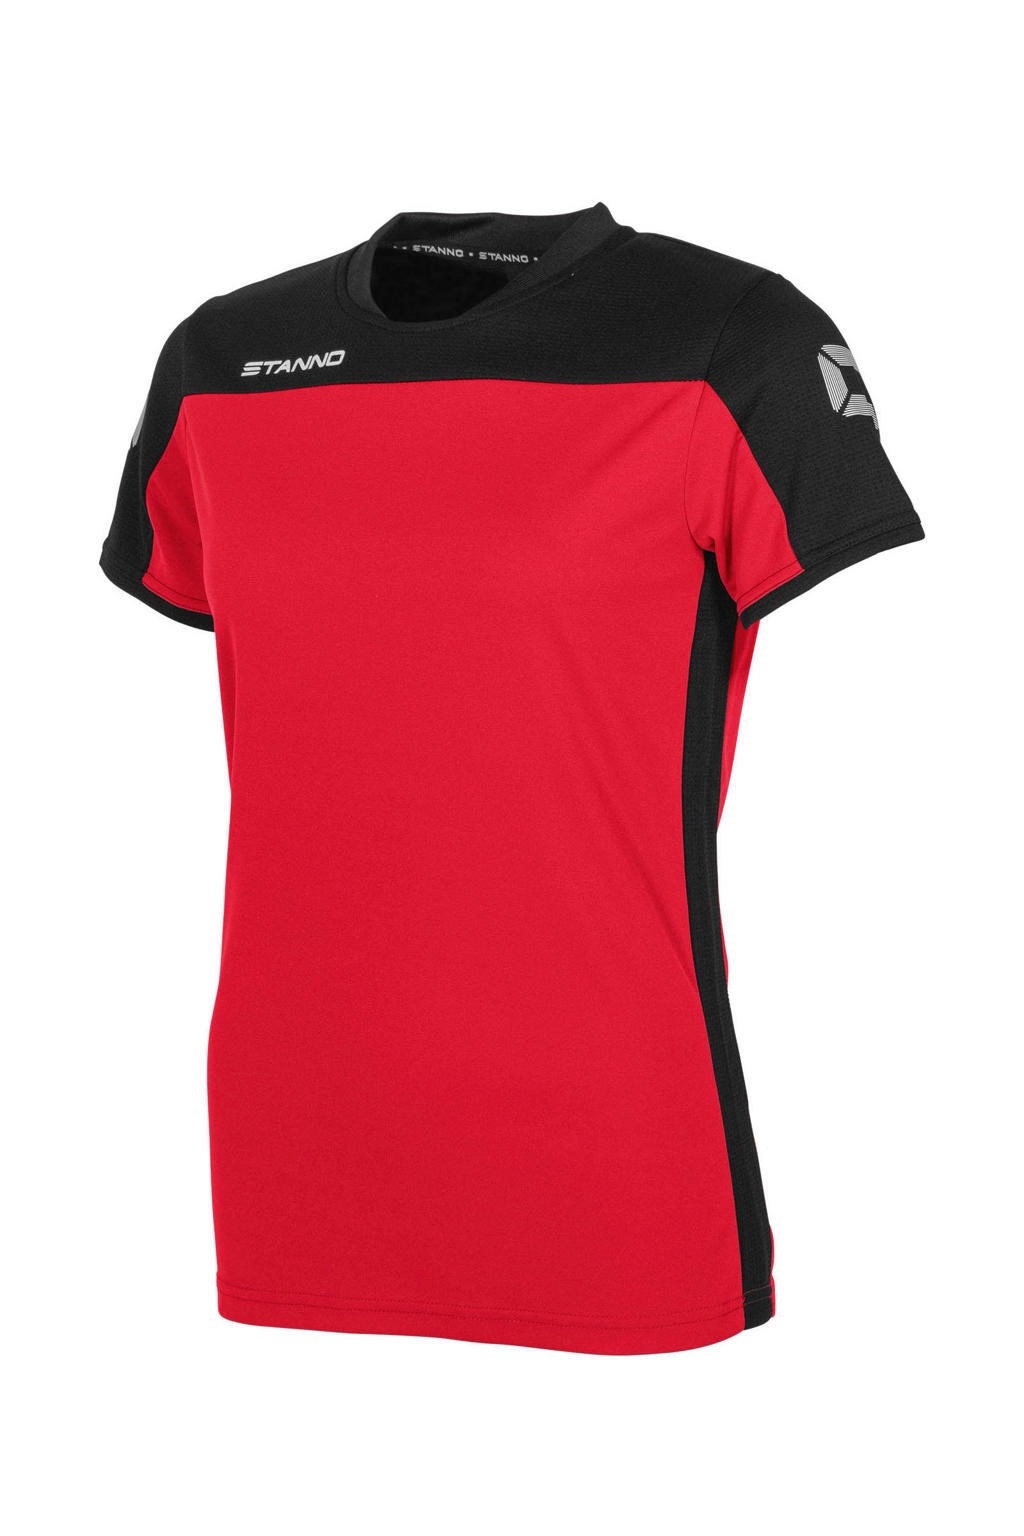 Stanno sport T-shirt rood/zwart